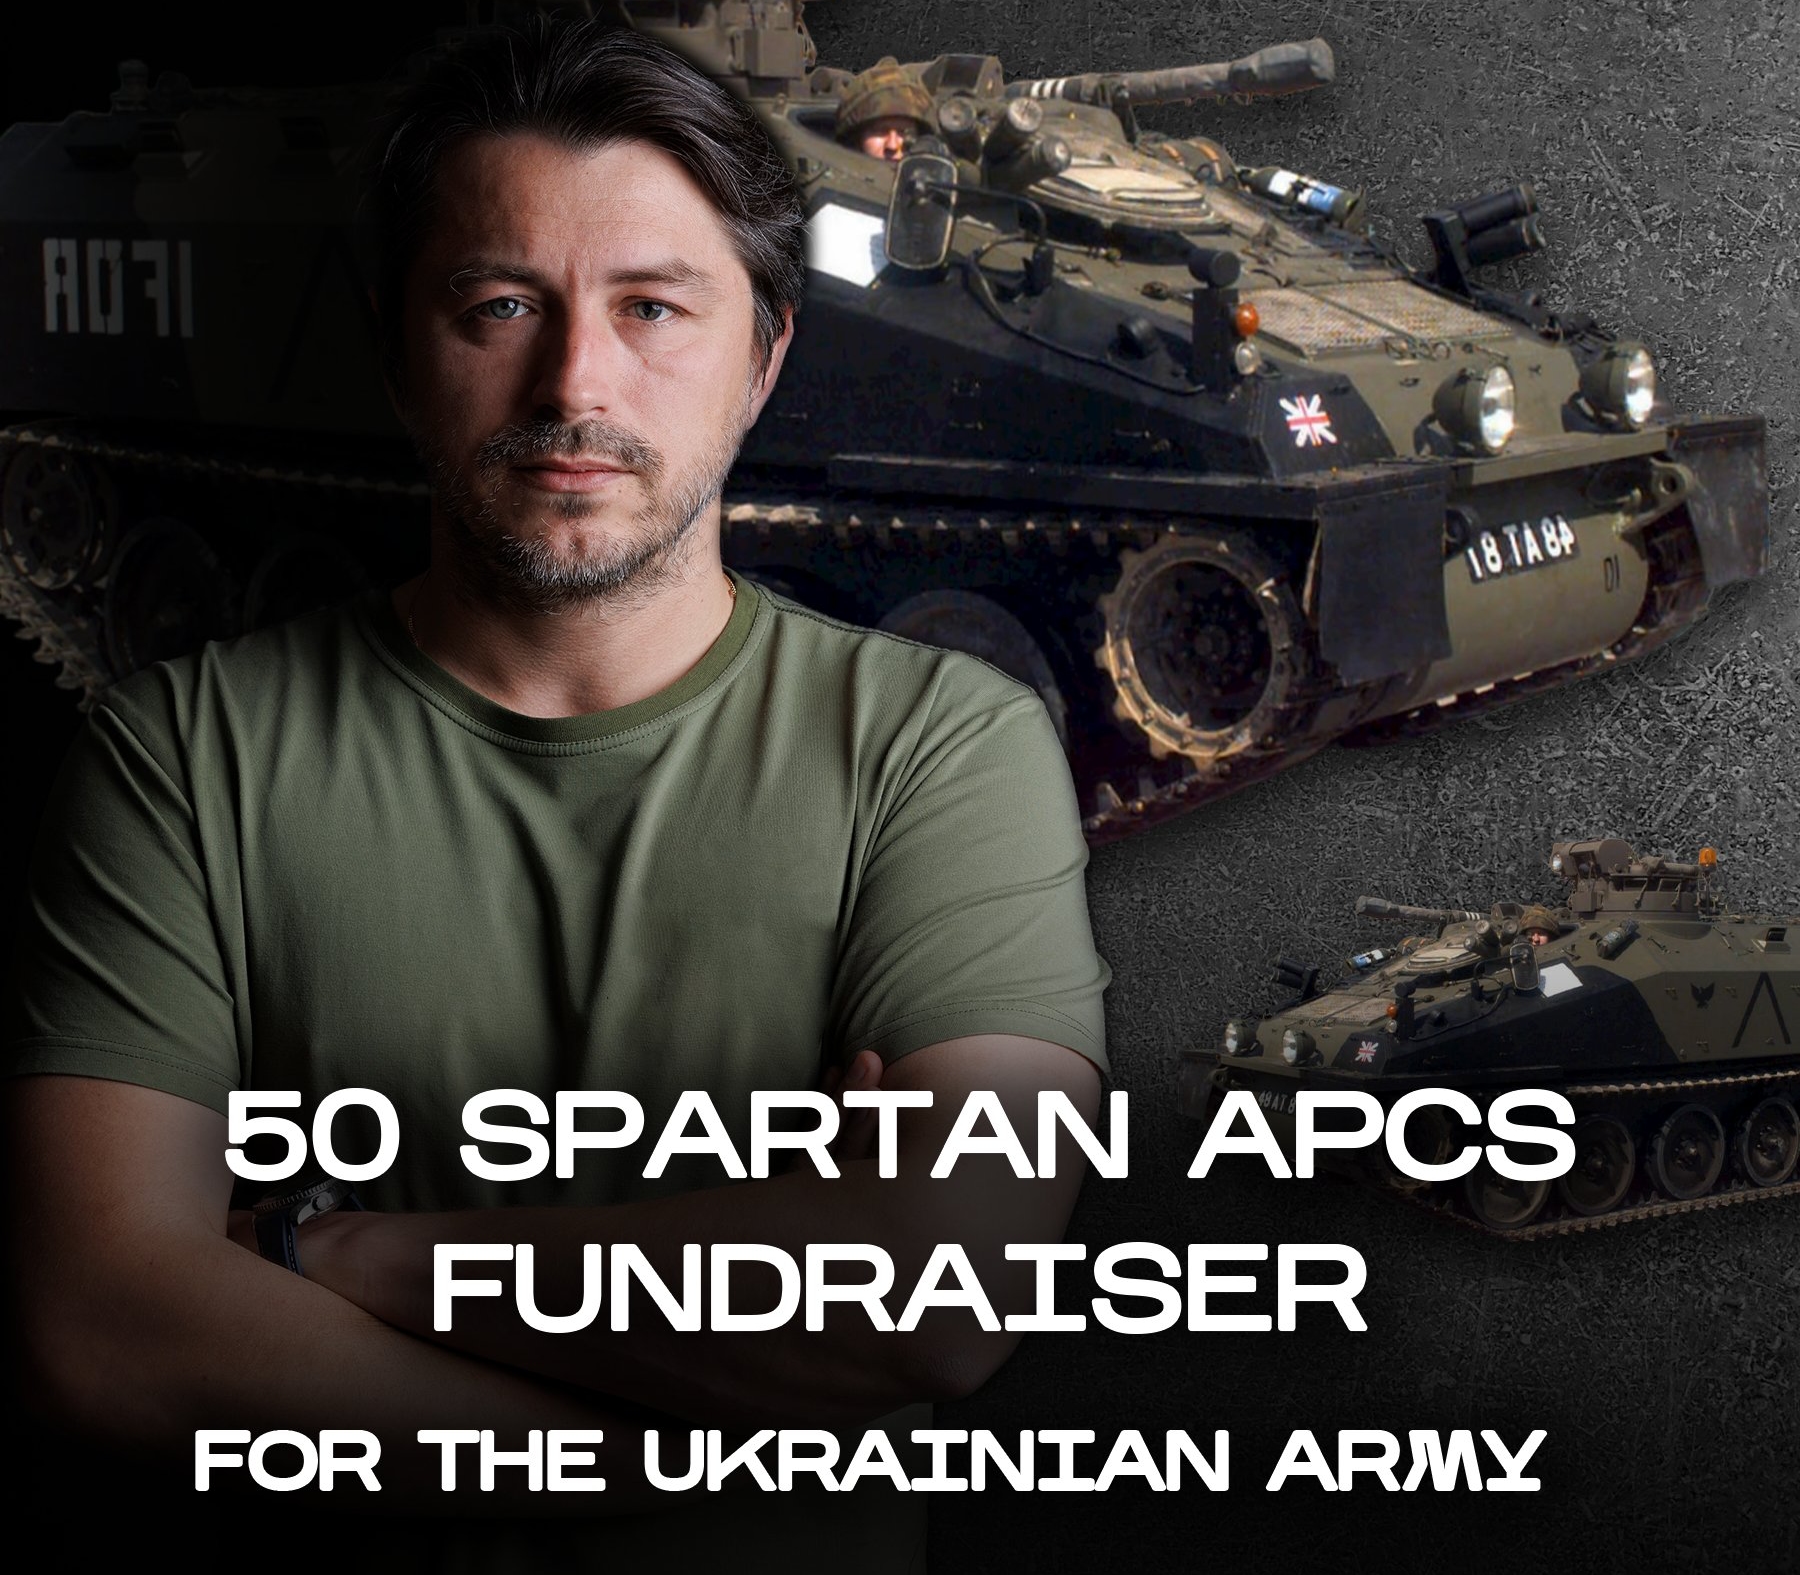 Ukraińscy ochotnicy zbierają 5 470 000 dolarów i chcą kupić 50 brytyjskich gąsienicowych transporterów opancerzonych Spartan dla AFU